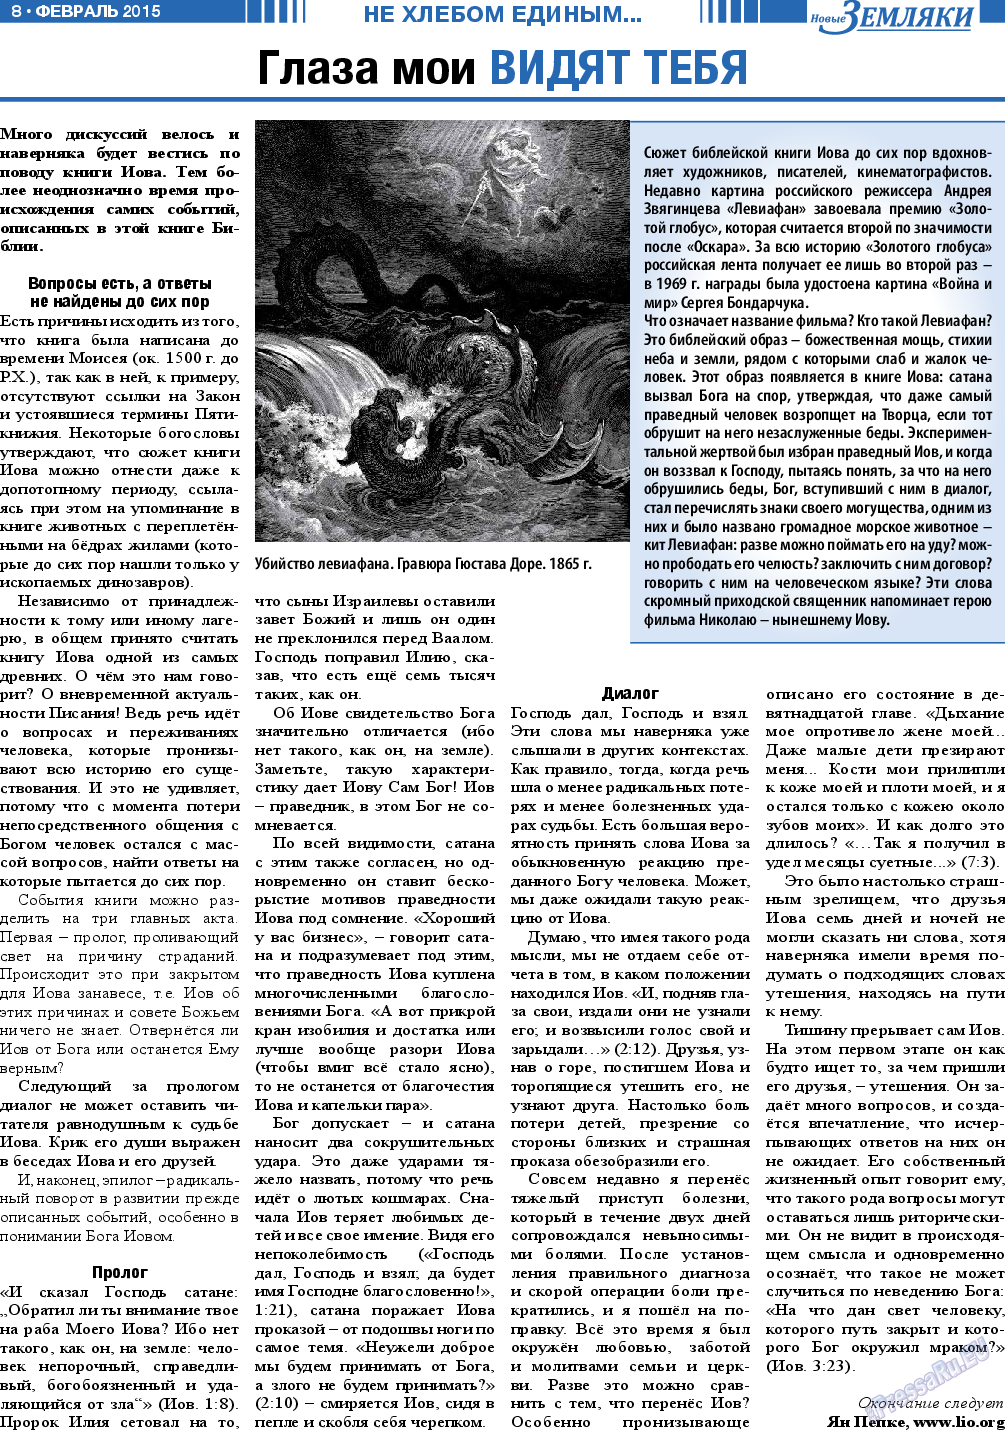 Новые Земляки, газета. 2015 №2 стр.8